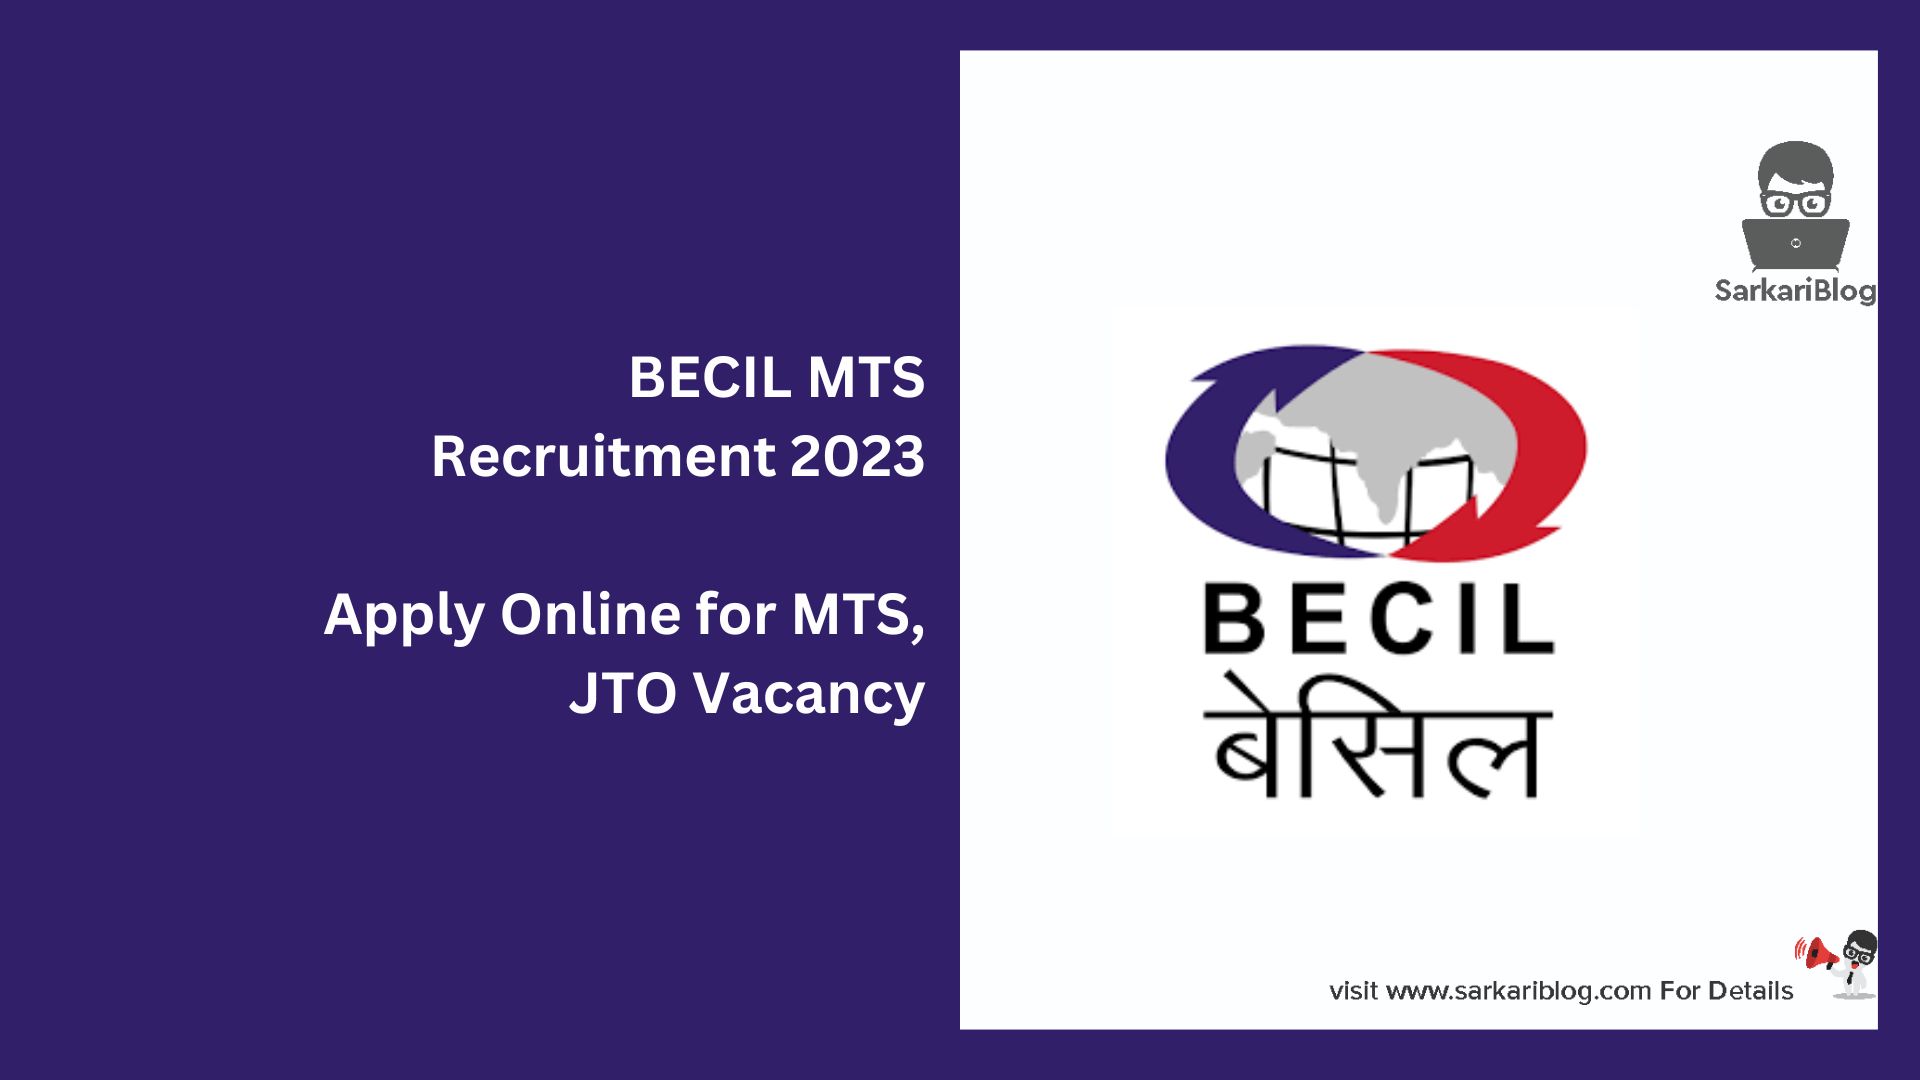 BECIL MTS Recruitment 2023